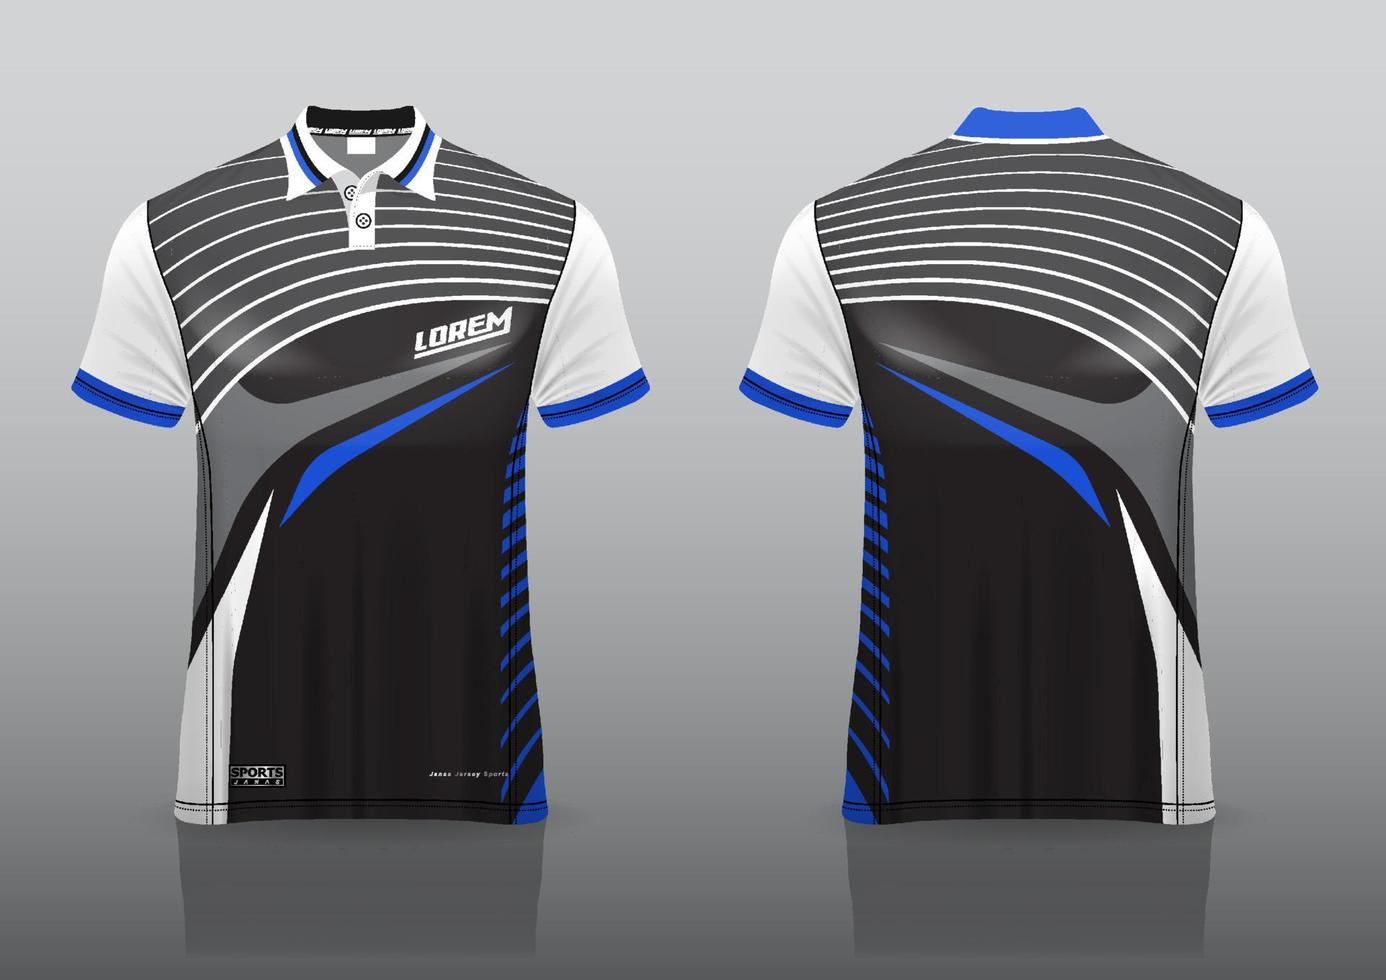 polo design uniforme per gli sport all'aria aperta vettore